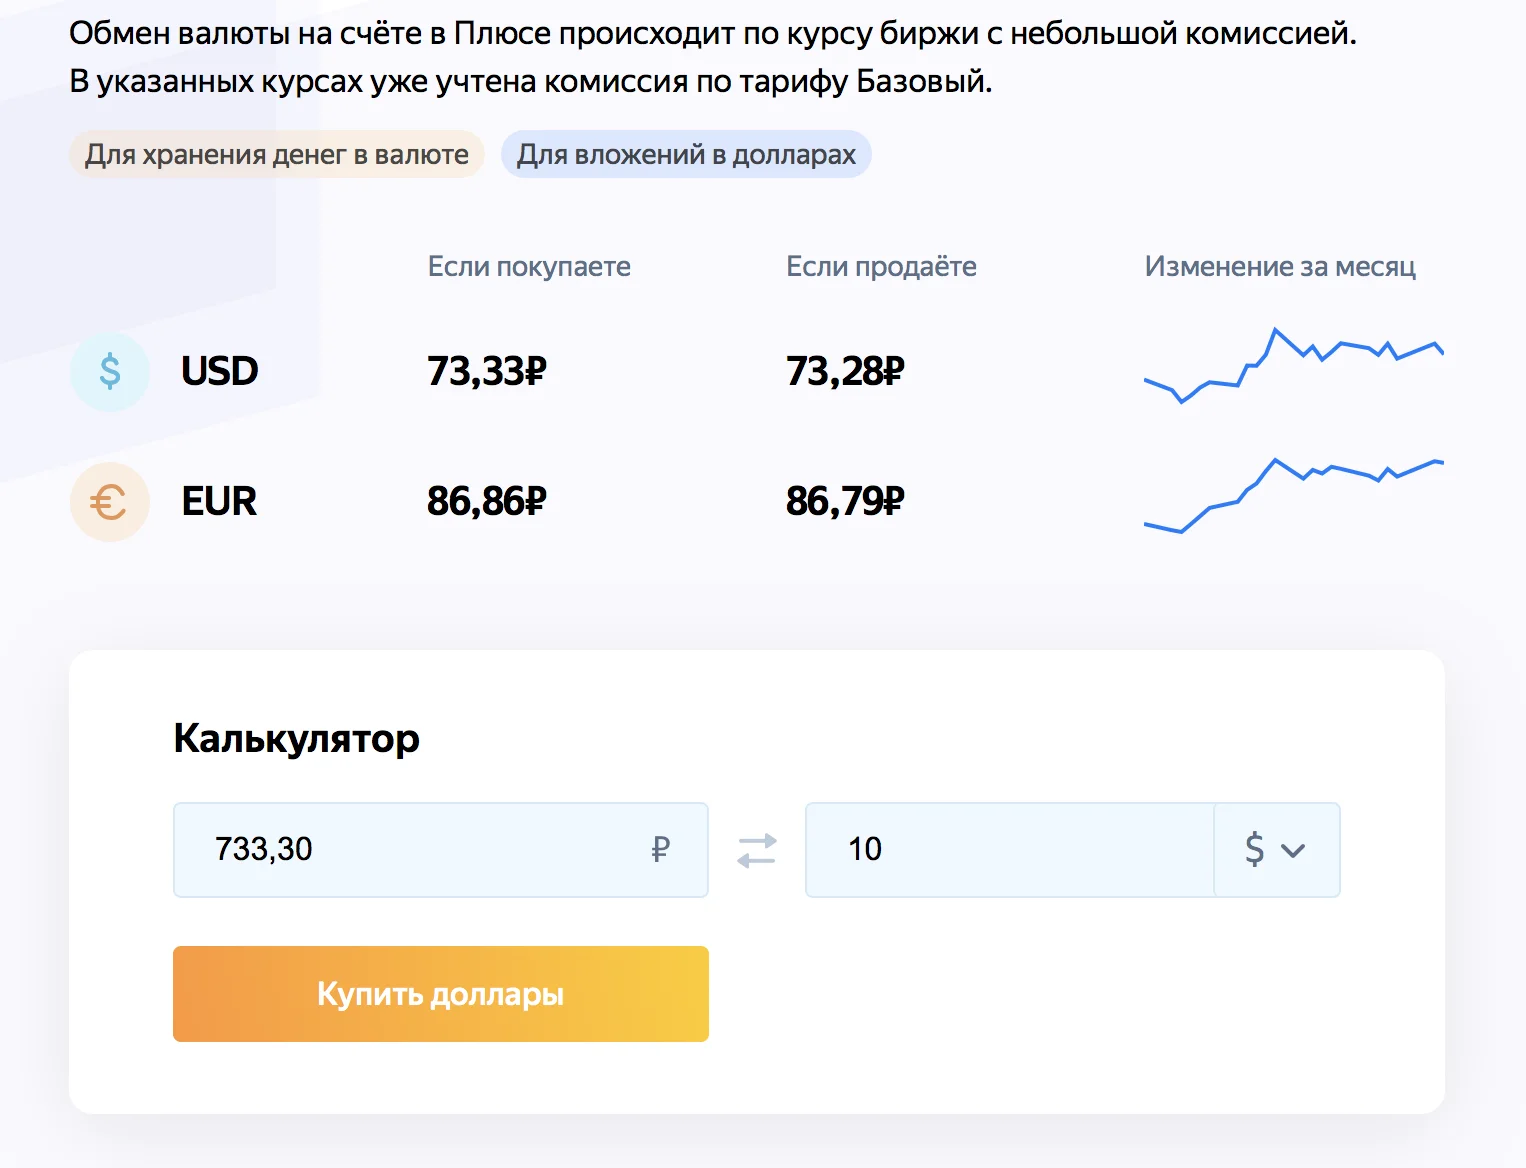 Находки: У Яндекс.Плюса теперь есть альтернатива банковским вкладам - фото 2